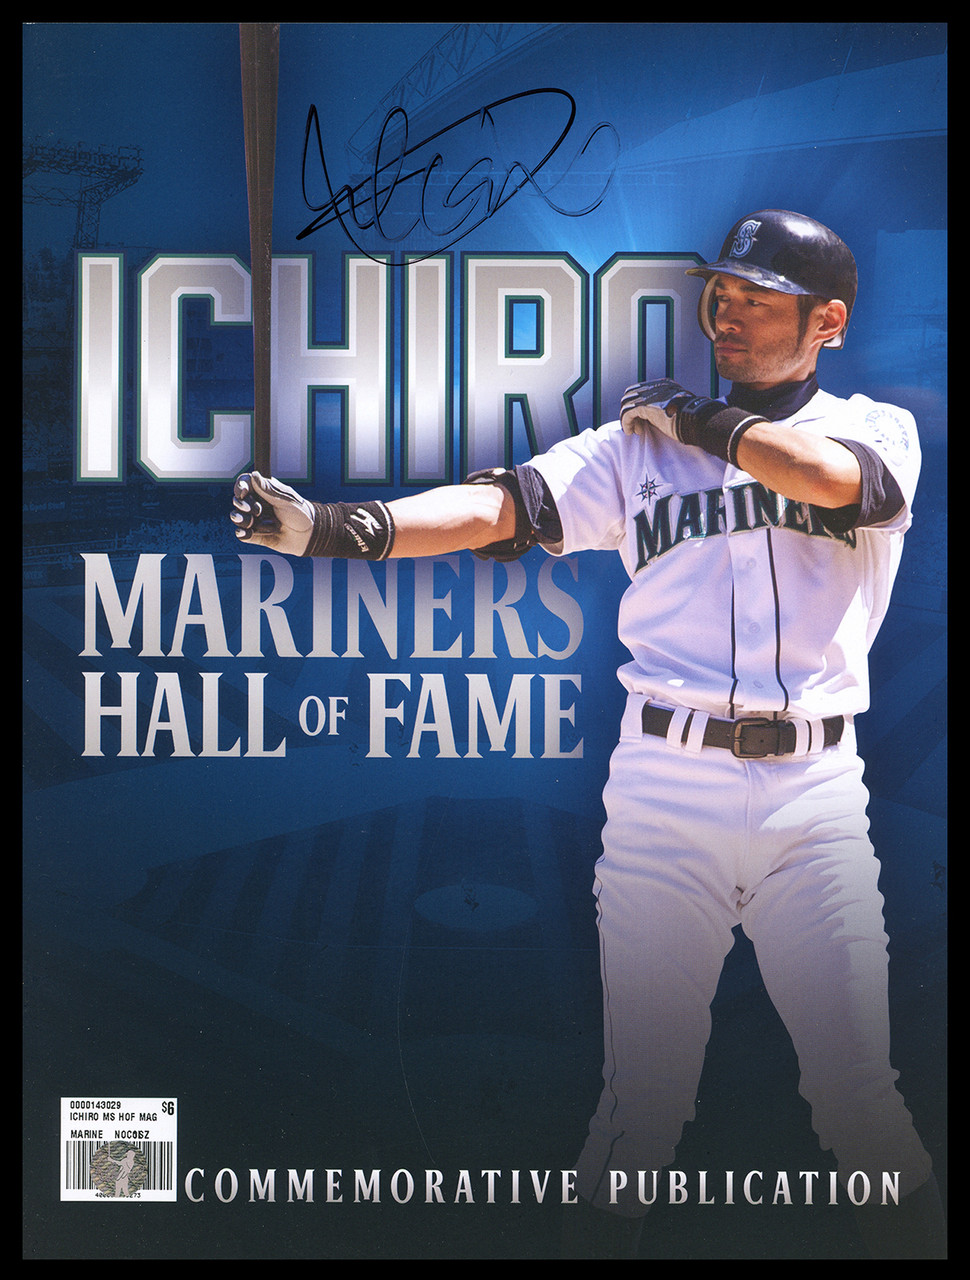 Ichiro Suzuki Autographed Seattle Mariners Majestic Baseball